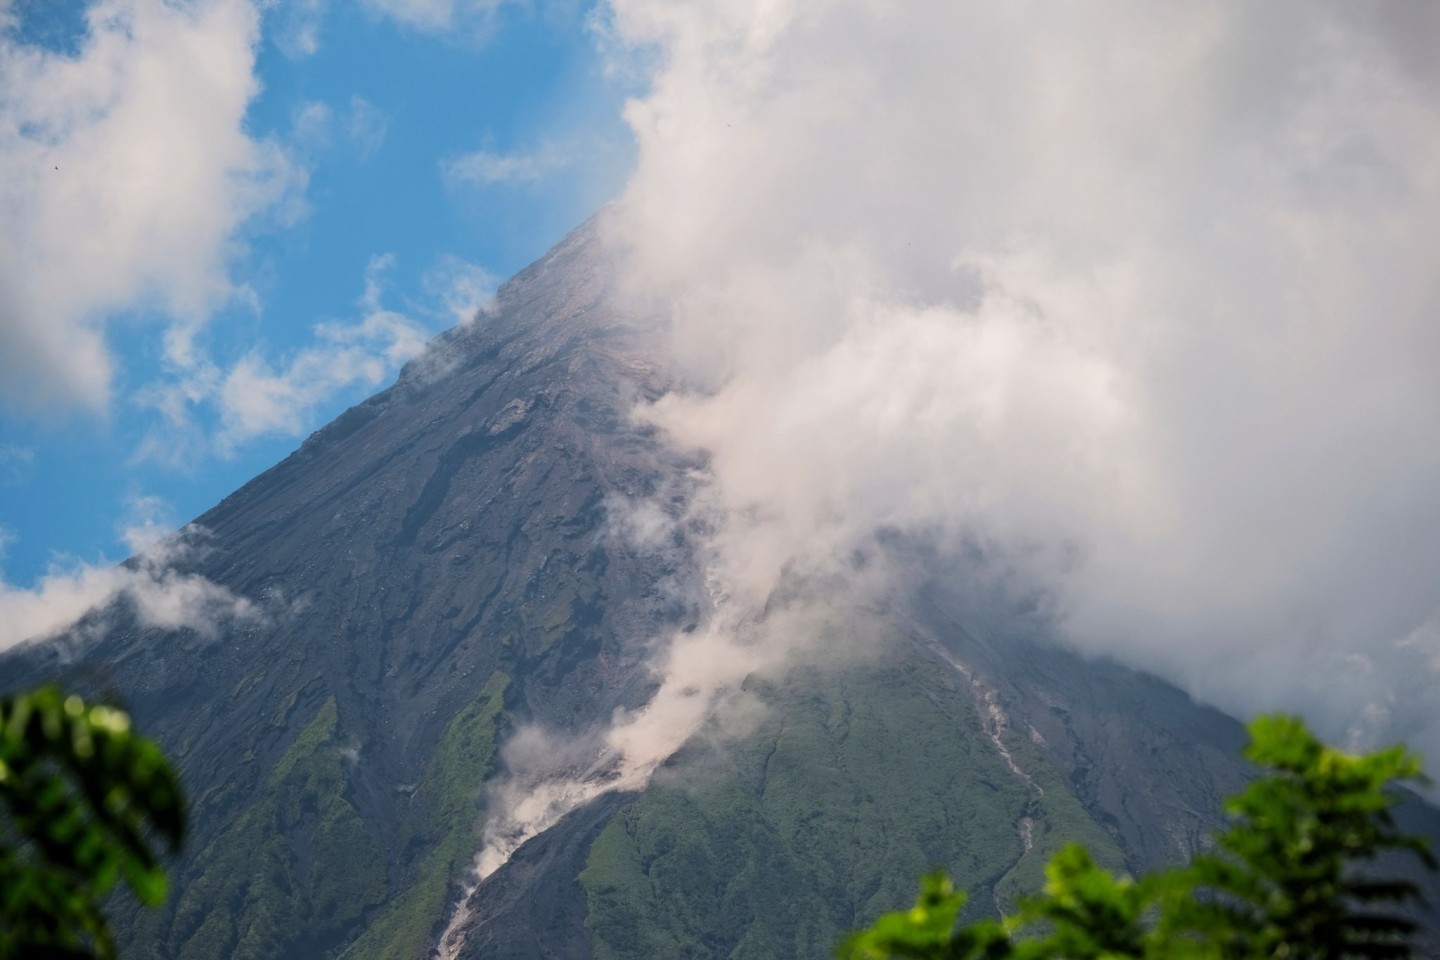 Das philippinische Institut für Vulkanologie und Seismologie erhöht den Status des Vulkans Mayon wegen «erhöhter Tendenz zu einer gefährlichen Eruption» auf Alarmstufe 3.